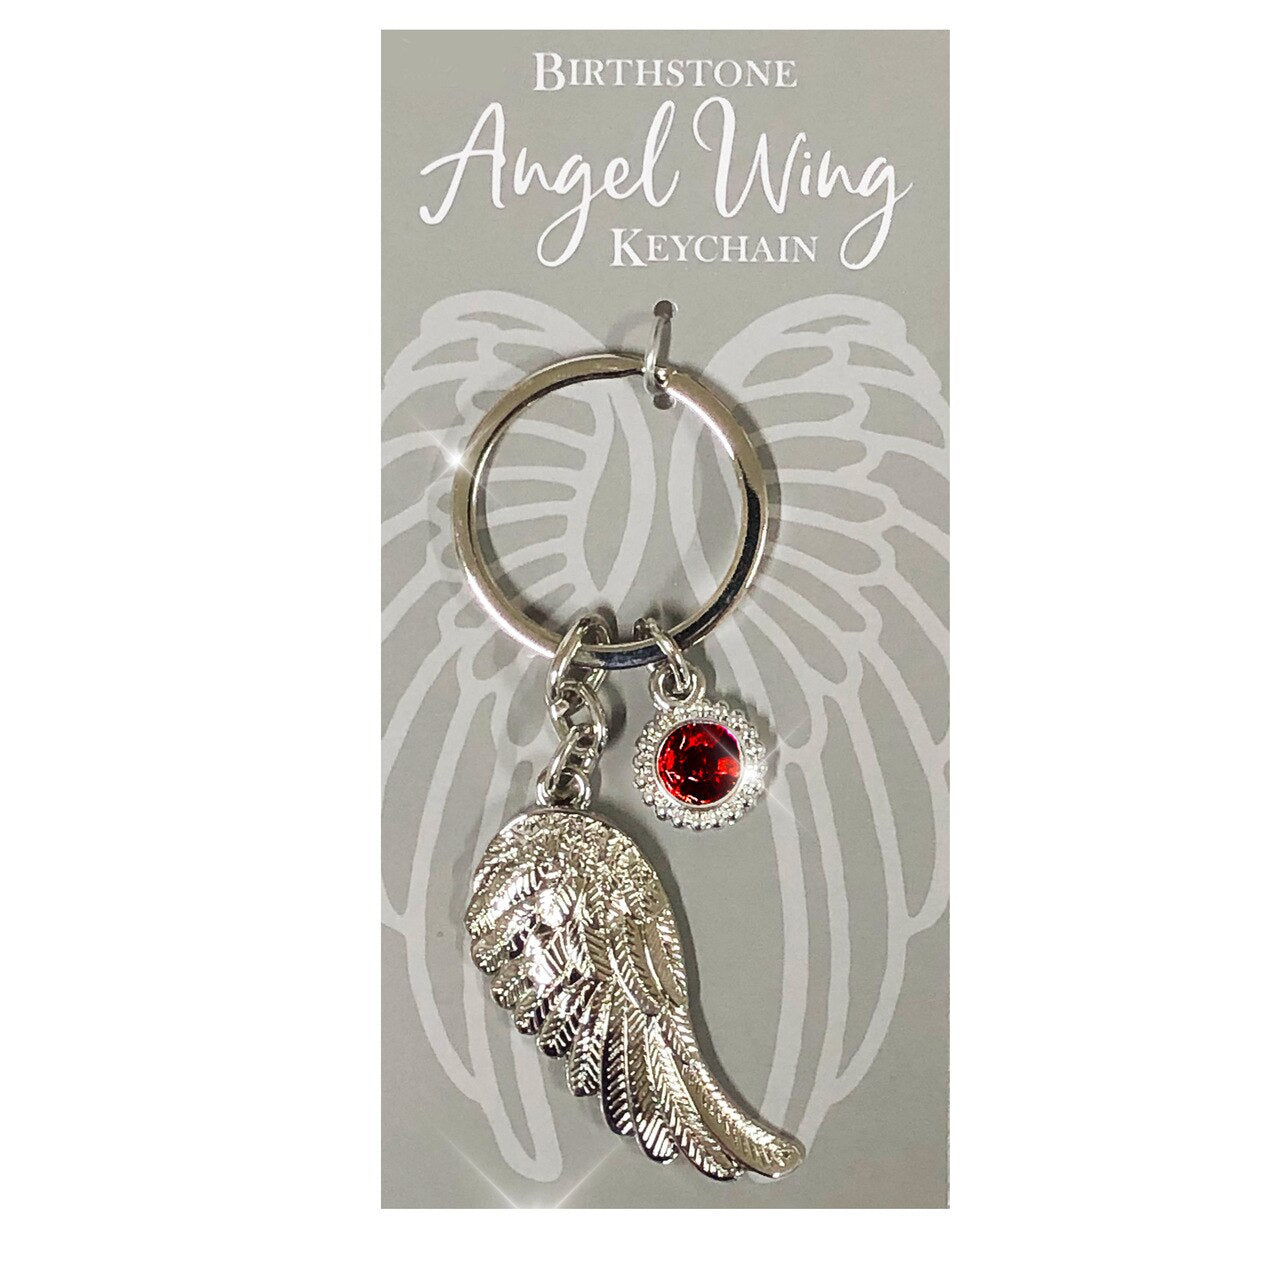 Birthstone Angel Wing Silver Keychain.